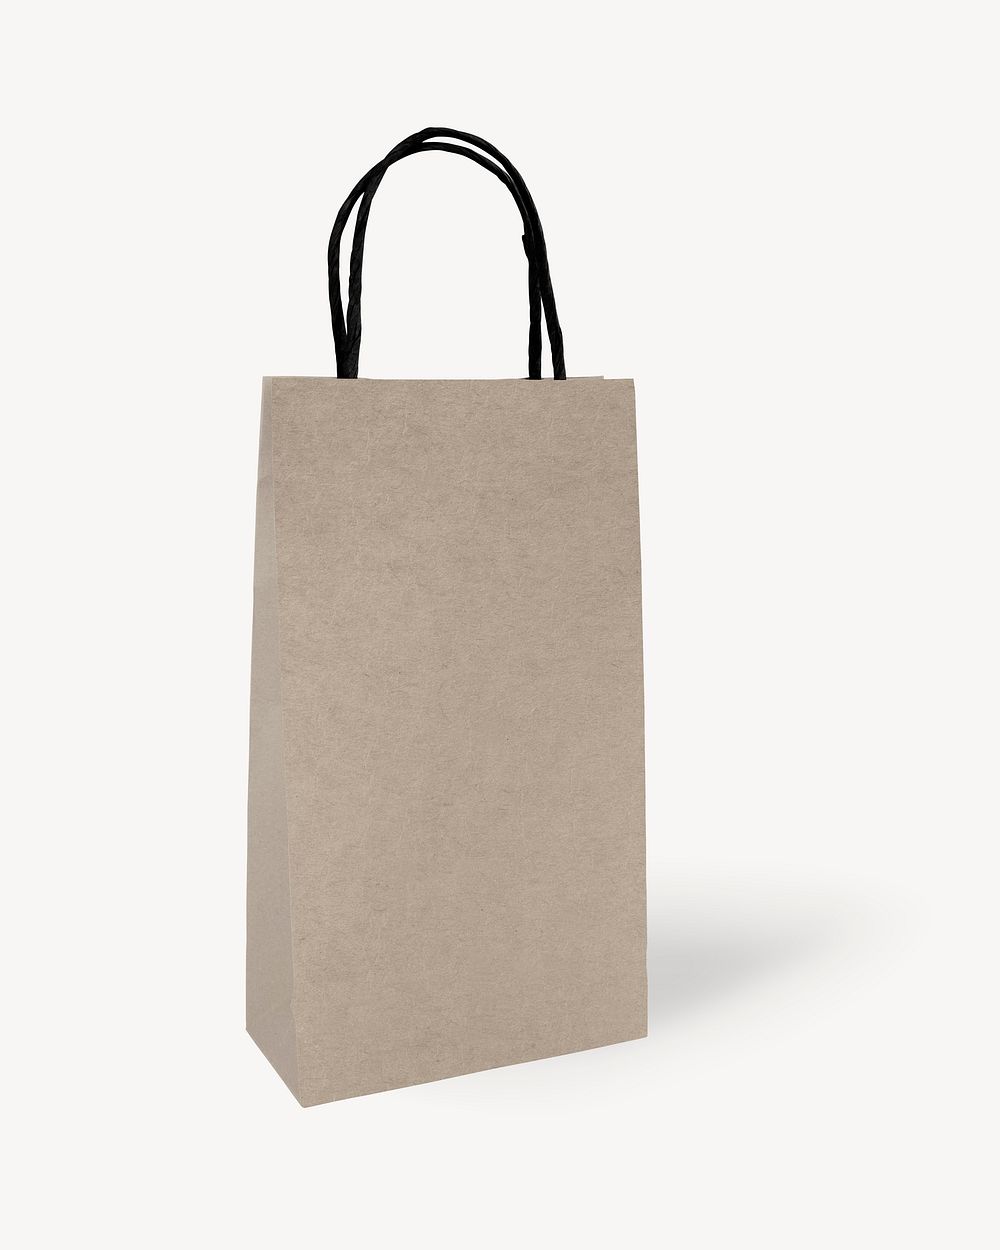 Minimal brown paper shopping bag